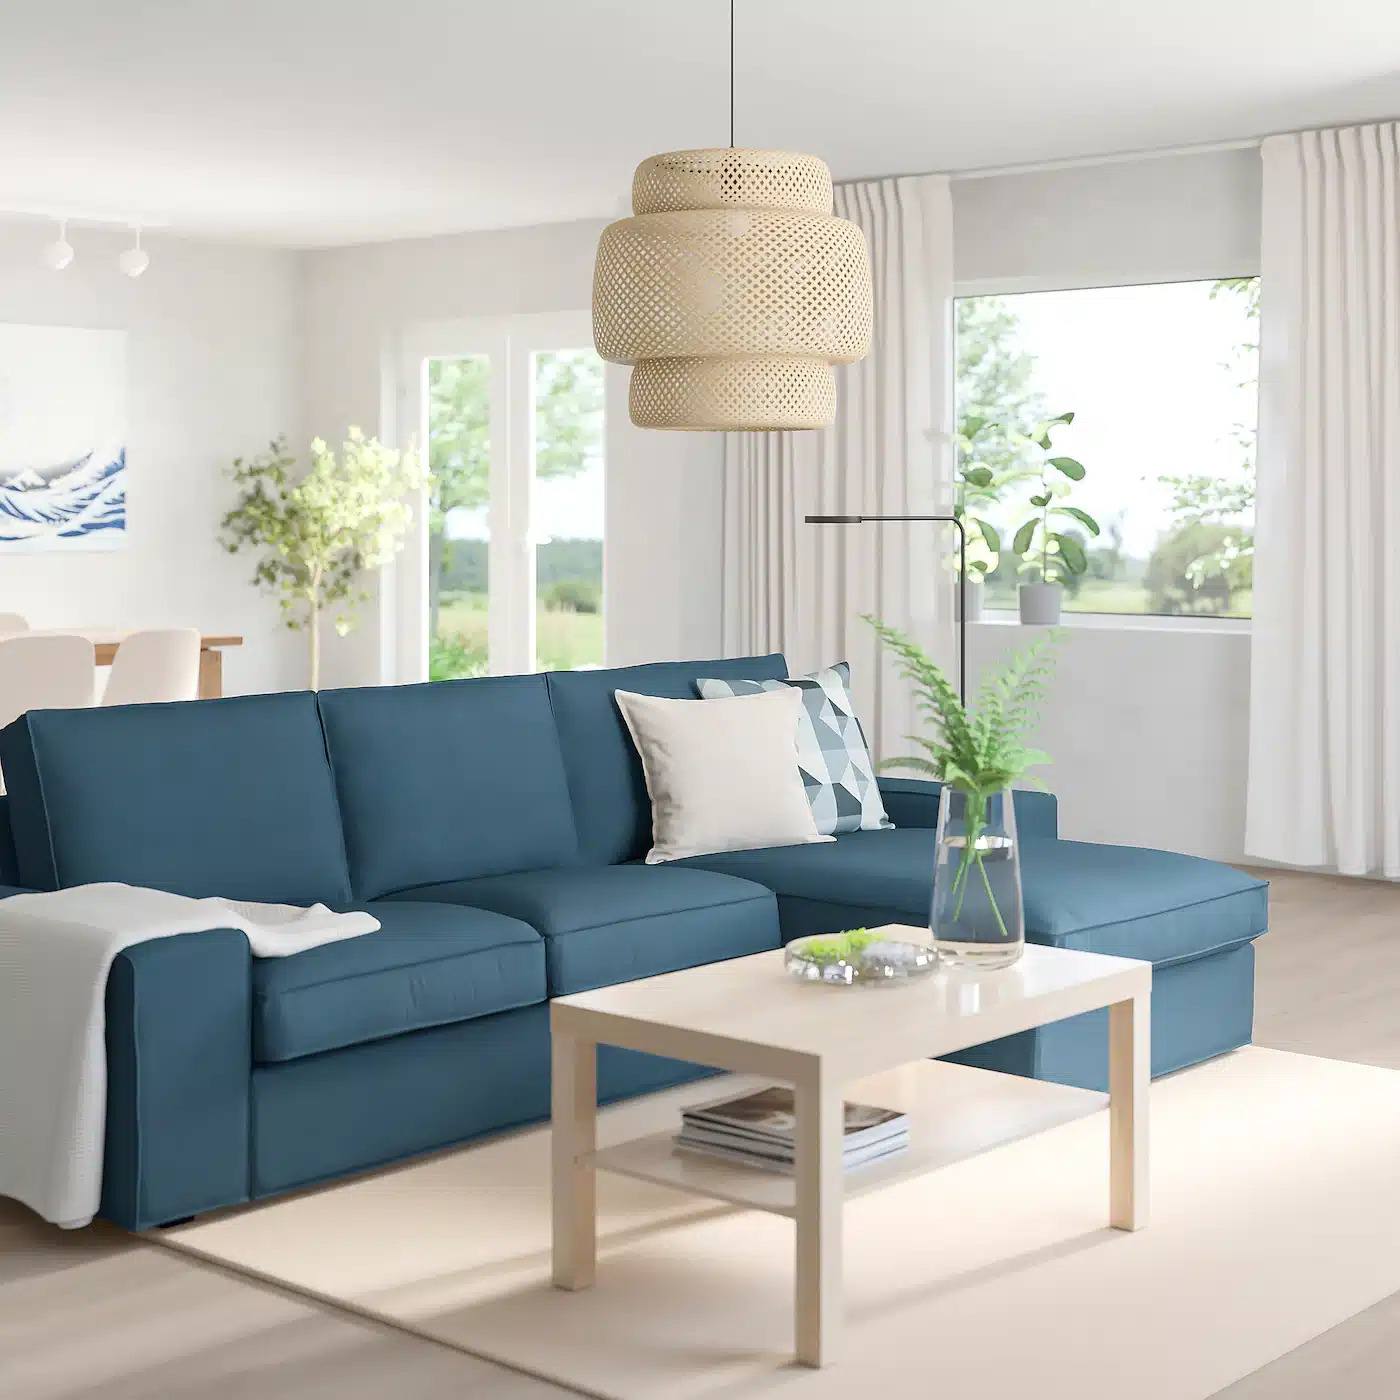 Ikea Kivik Sofa Review